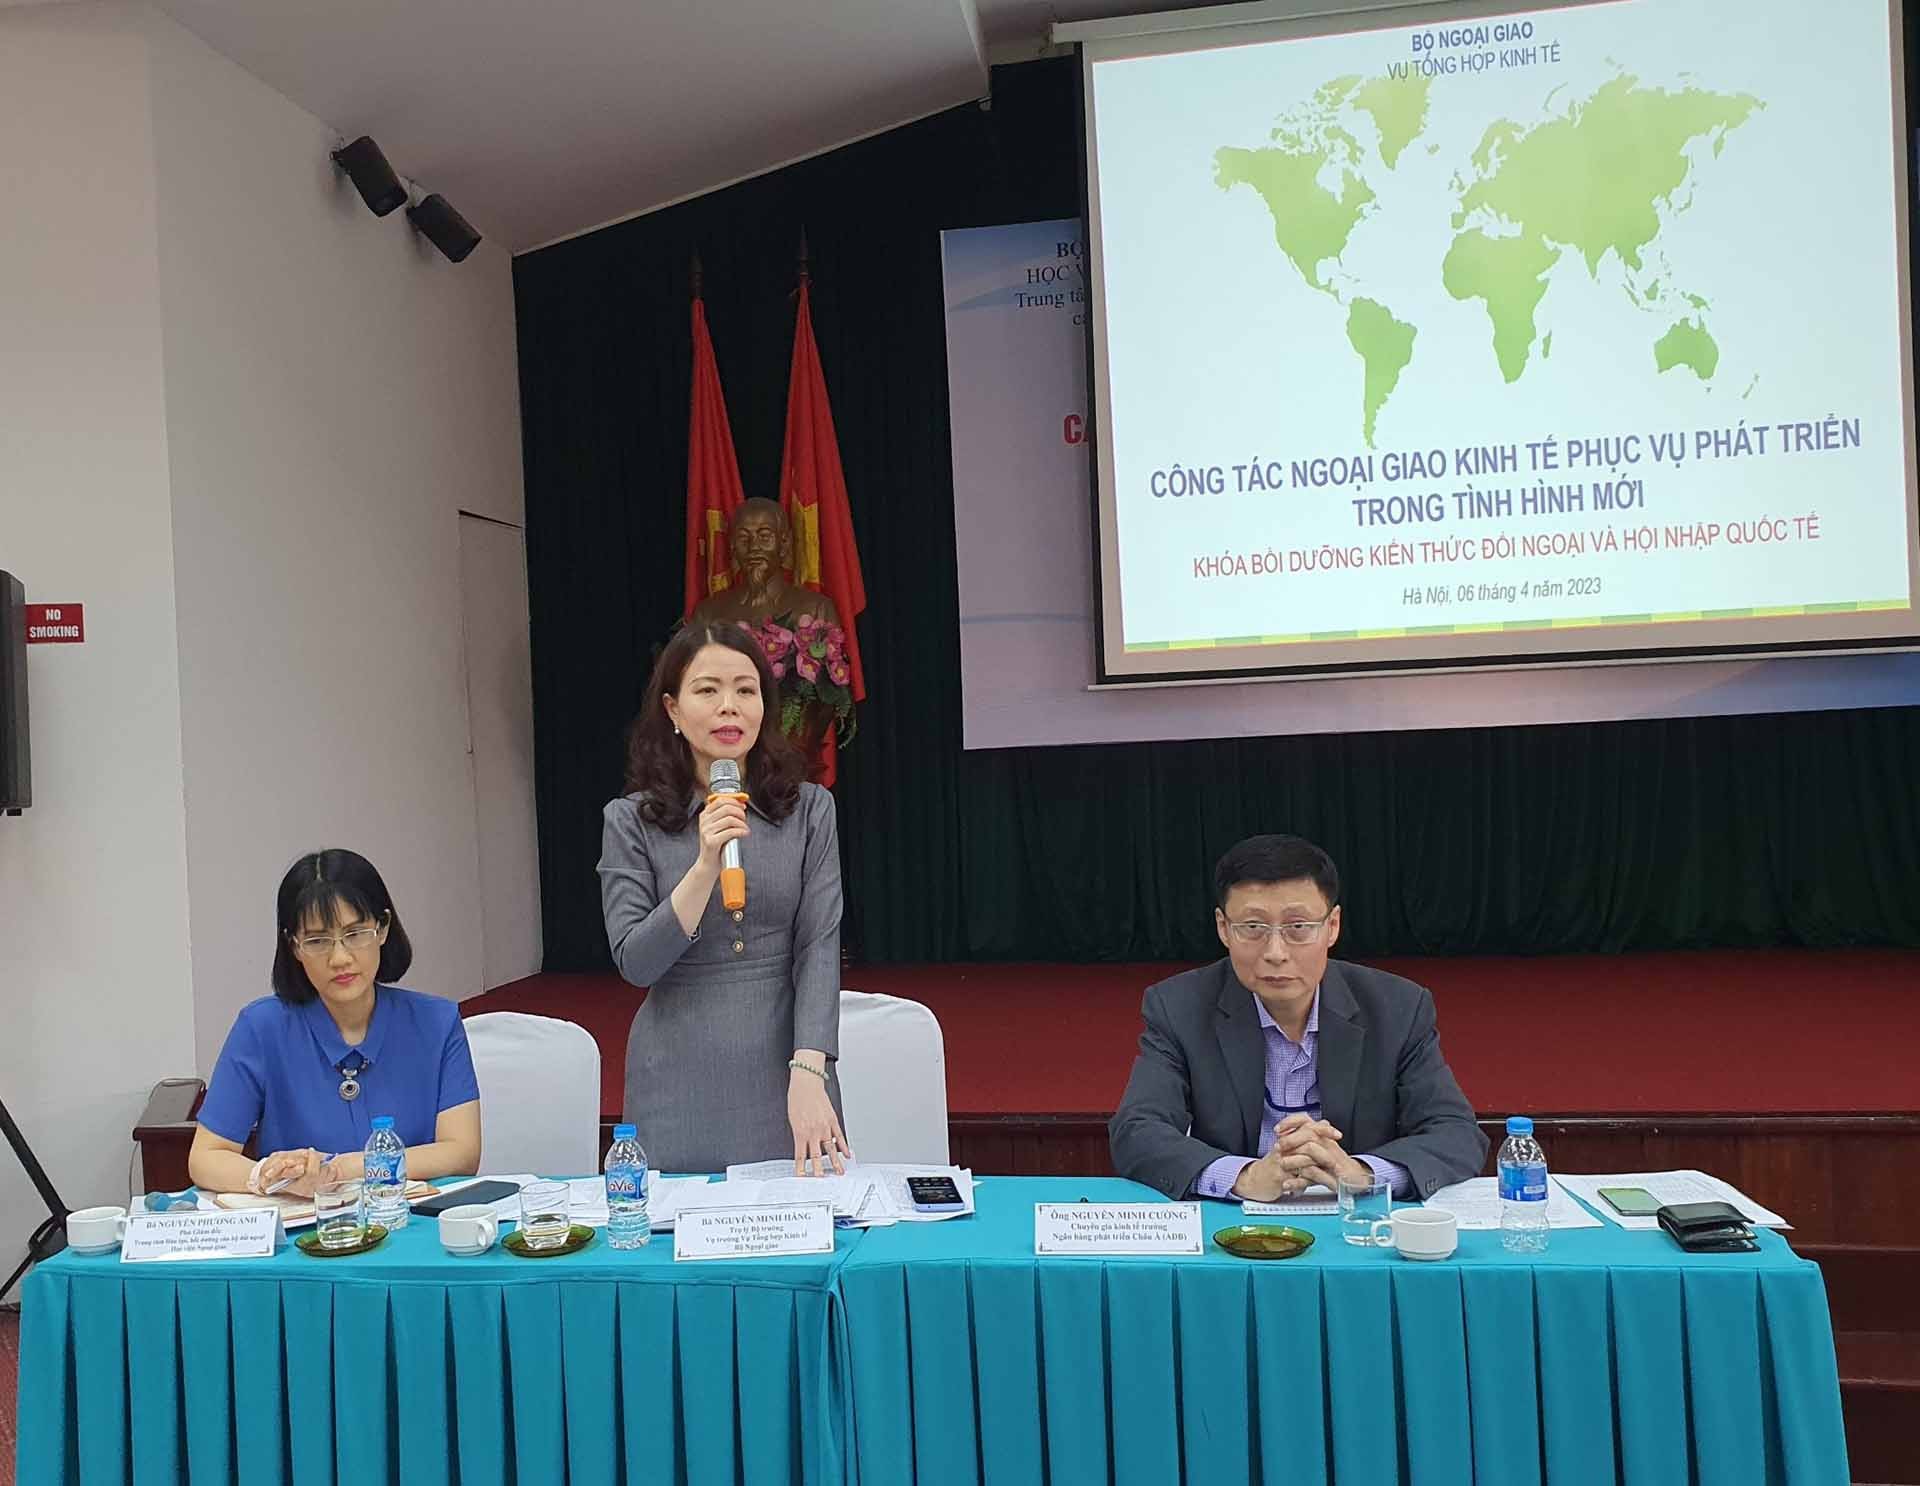 Bà Nguyễn Minh Hằng, Trợ lý Bộ trưởng Ngoại giao, Vụ trưởng Vụ Tổng hợp kinh tế trao đổi về công tác ngoại giao kinh tế phục vụ phát triển trong tình hình mới.